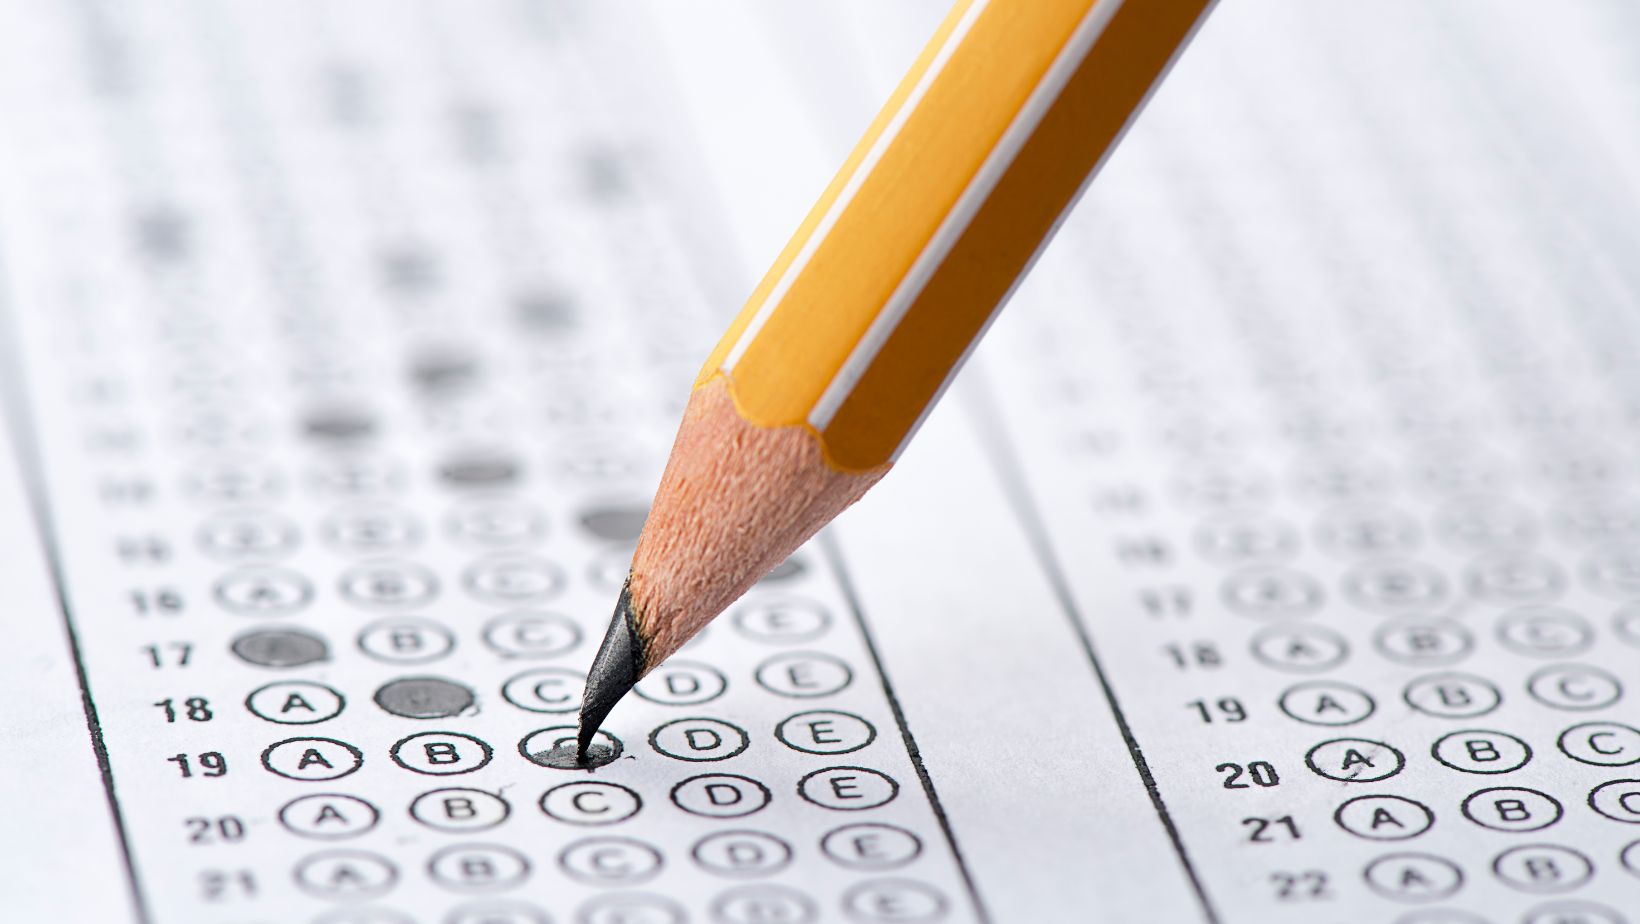 google educator level 1 exam answers 2022